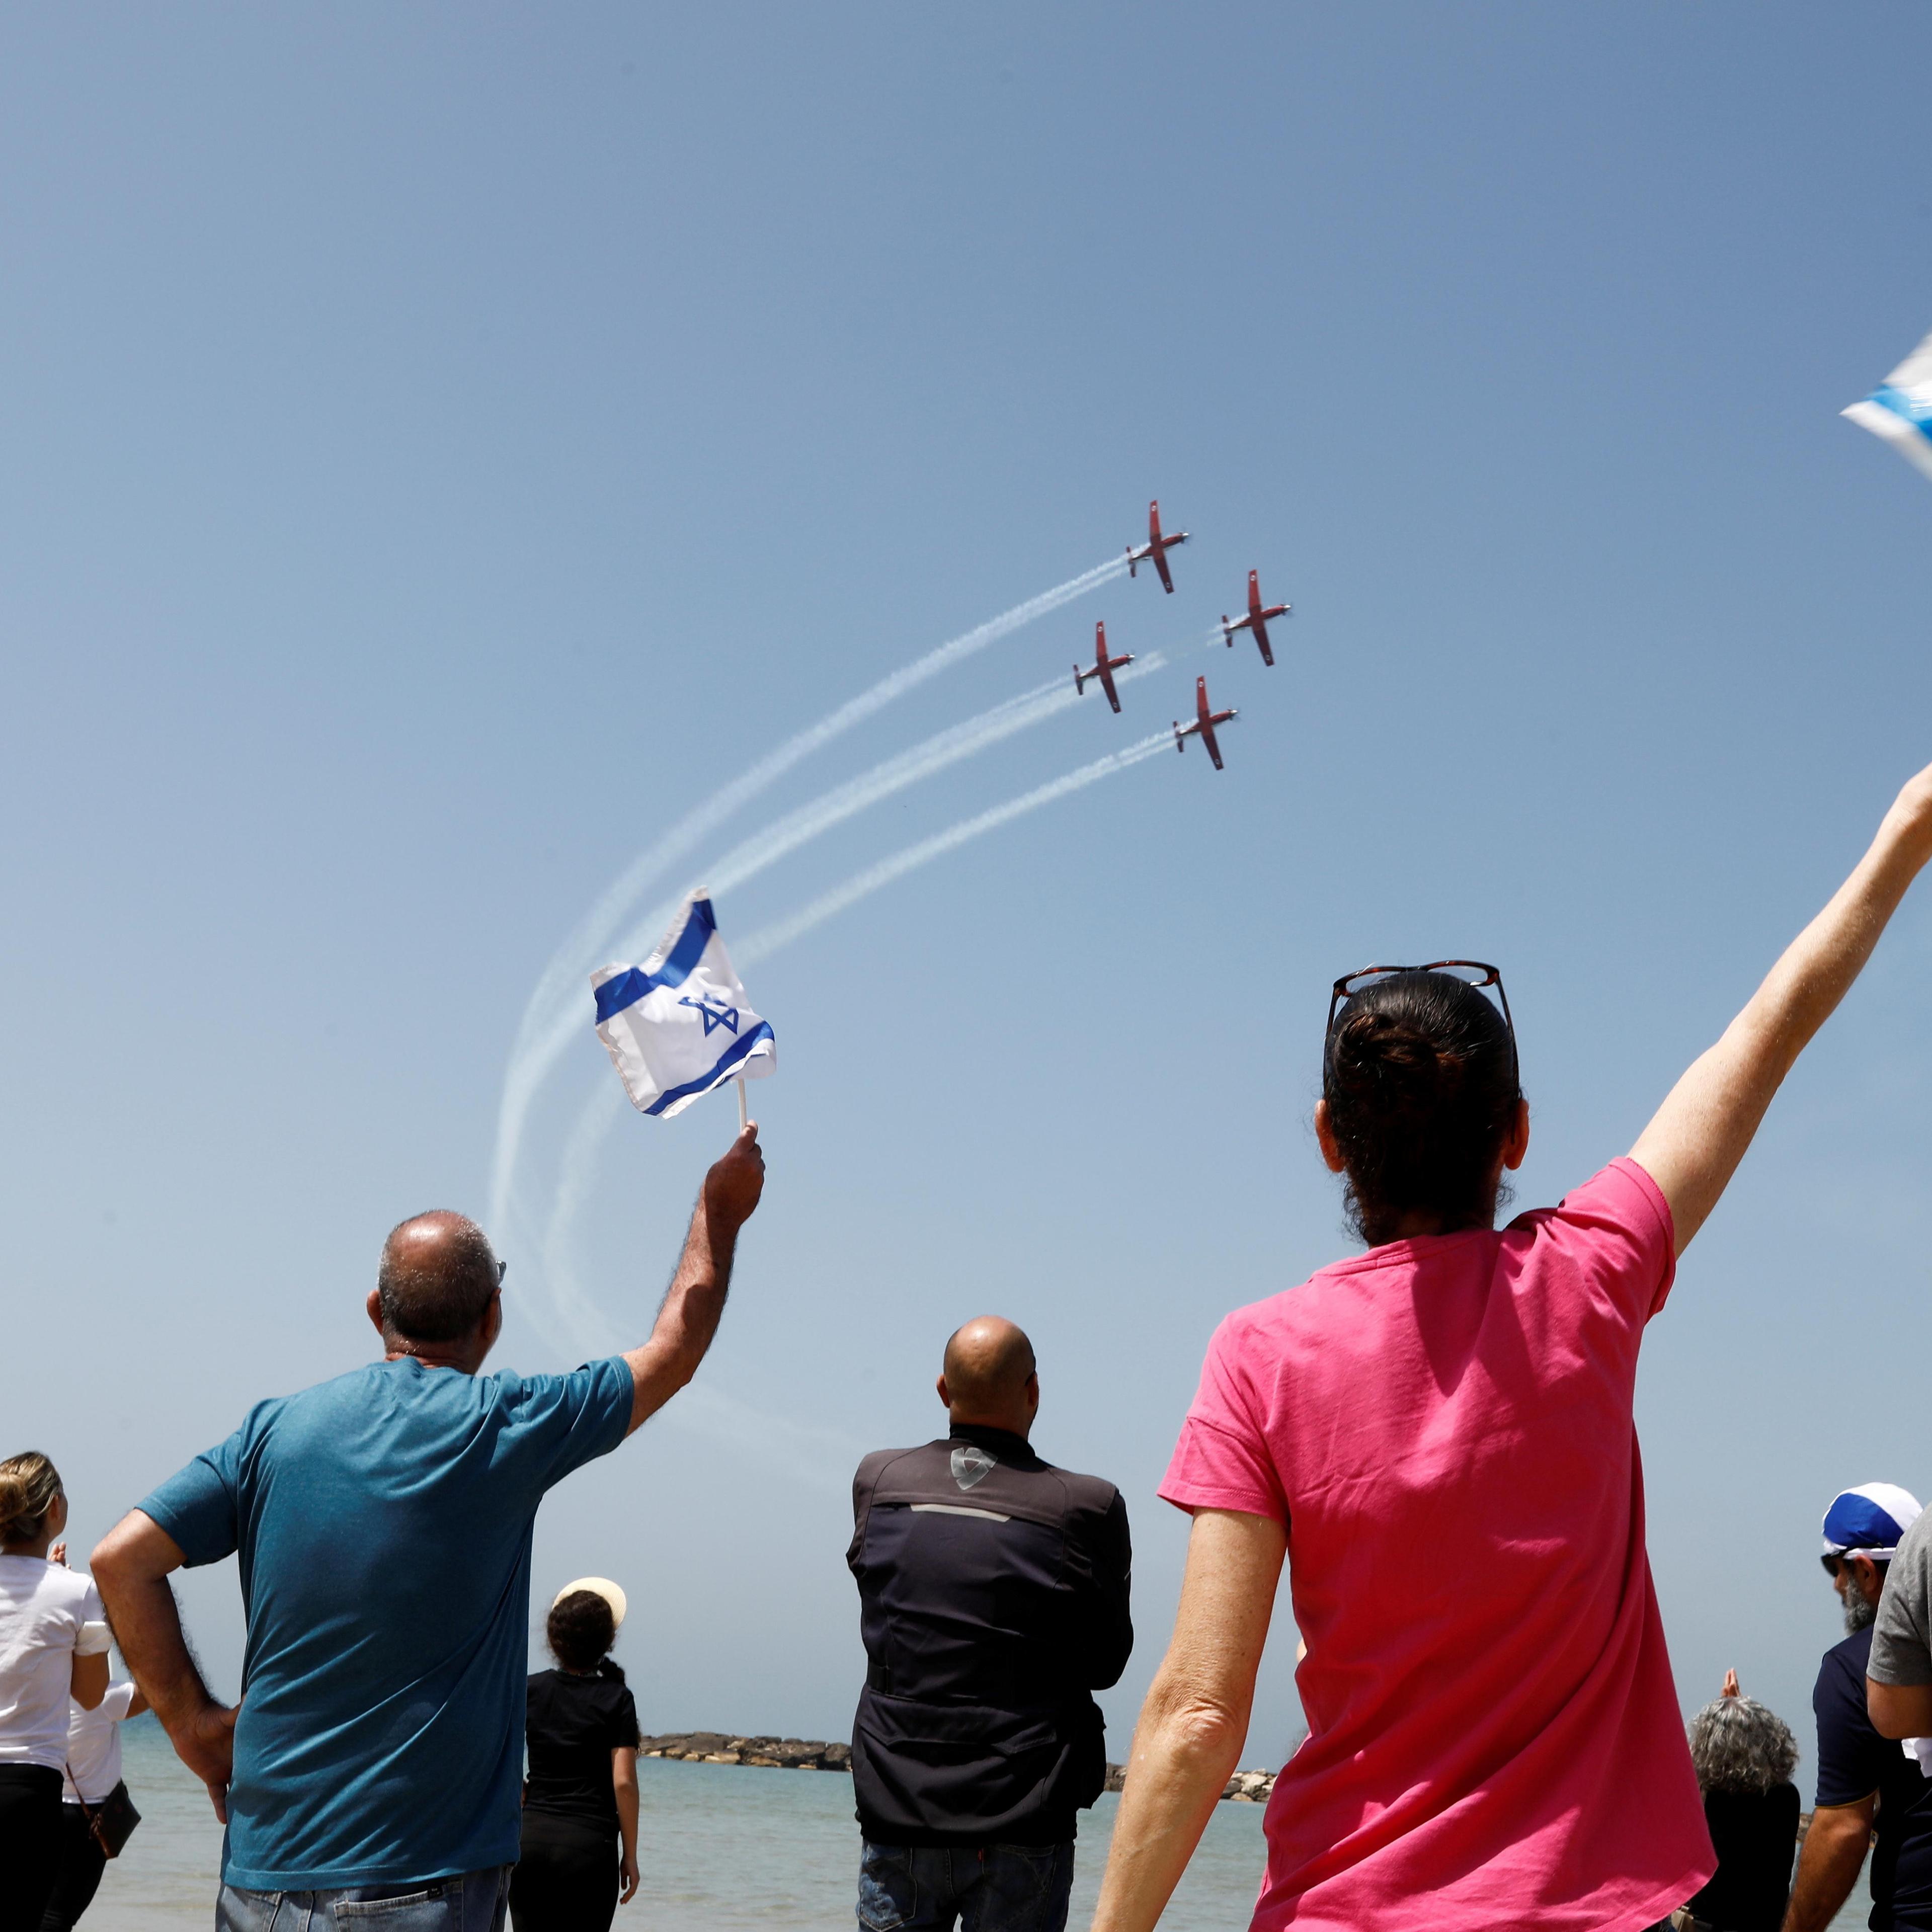 أهم التطورات: إسرائيل توقع صفقة لإنشاء مركز لتدريب القوات الجوية اليونانية